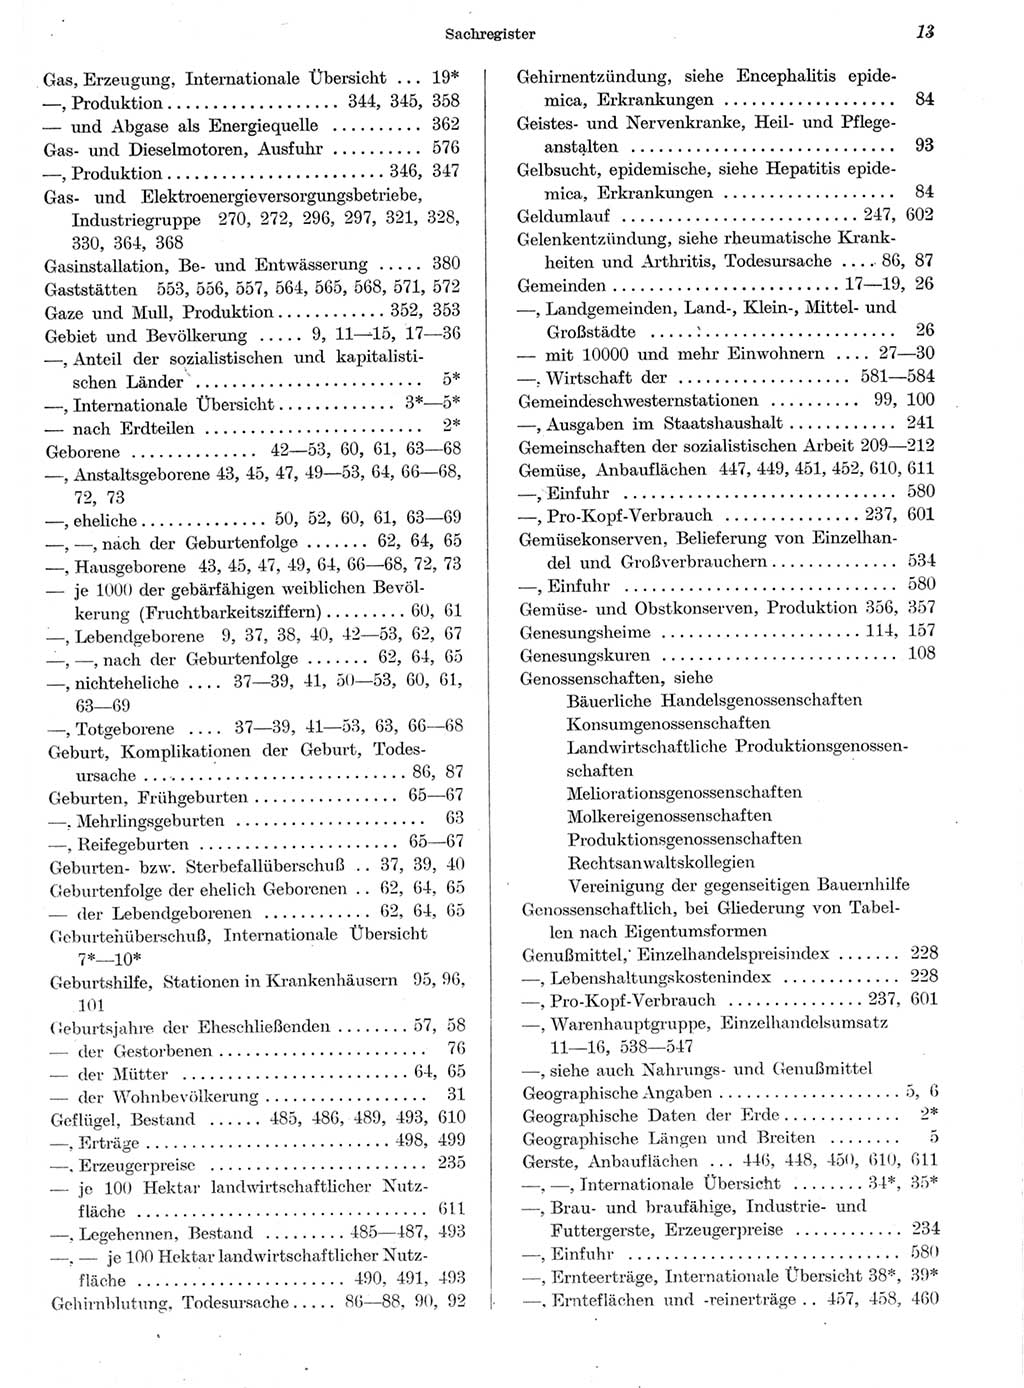 Statistisches Jahrbuch der Deutschen Demokratischen Republik (DDR) 1959, Seite 13 (Stat. Jb. DDR 1959, S. 13)